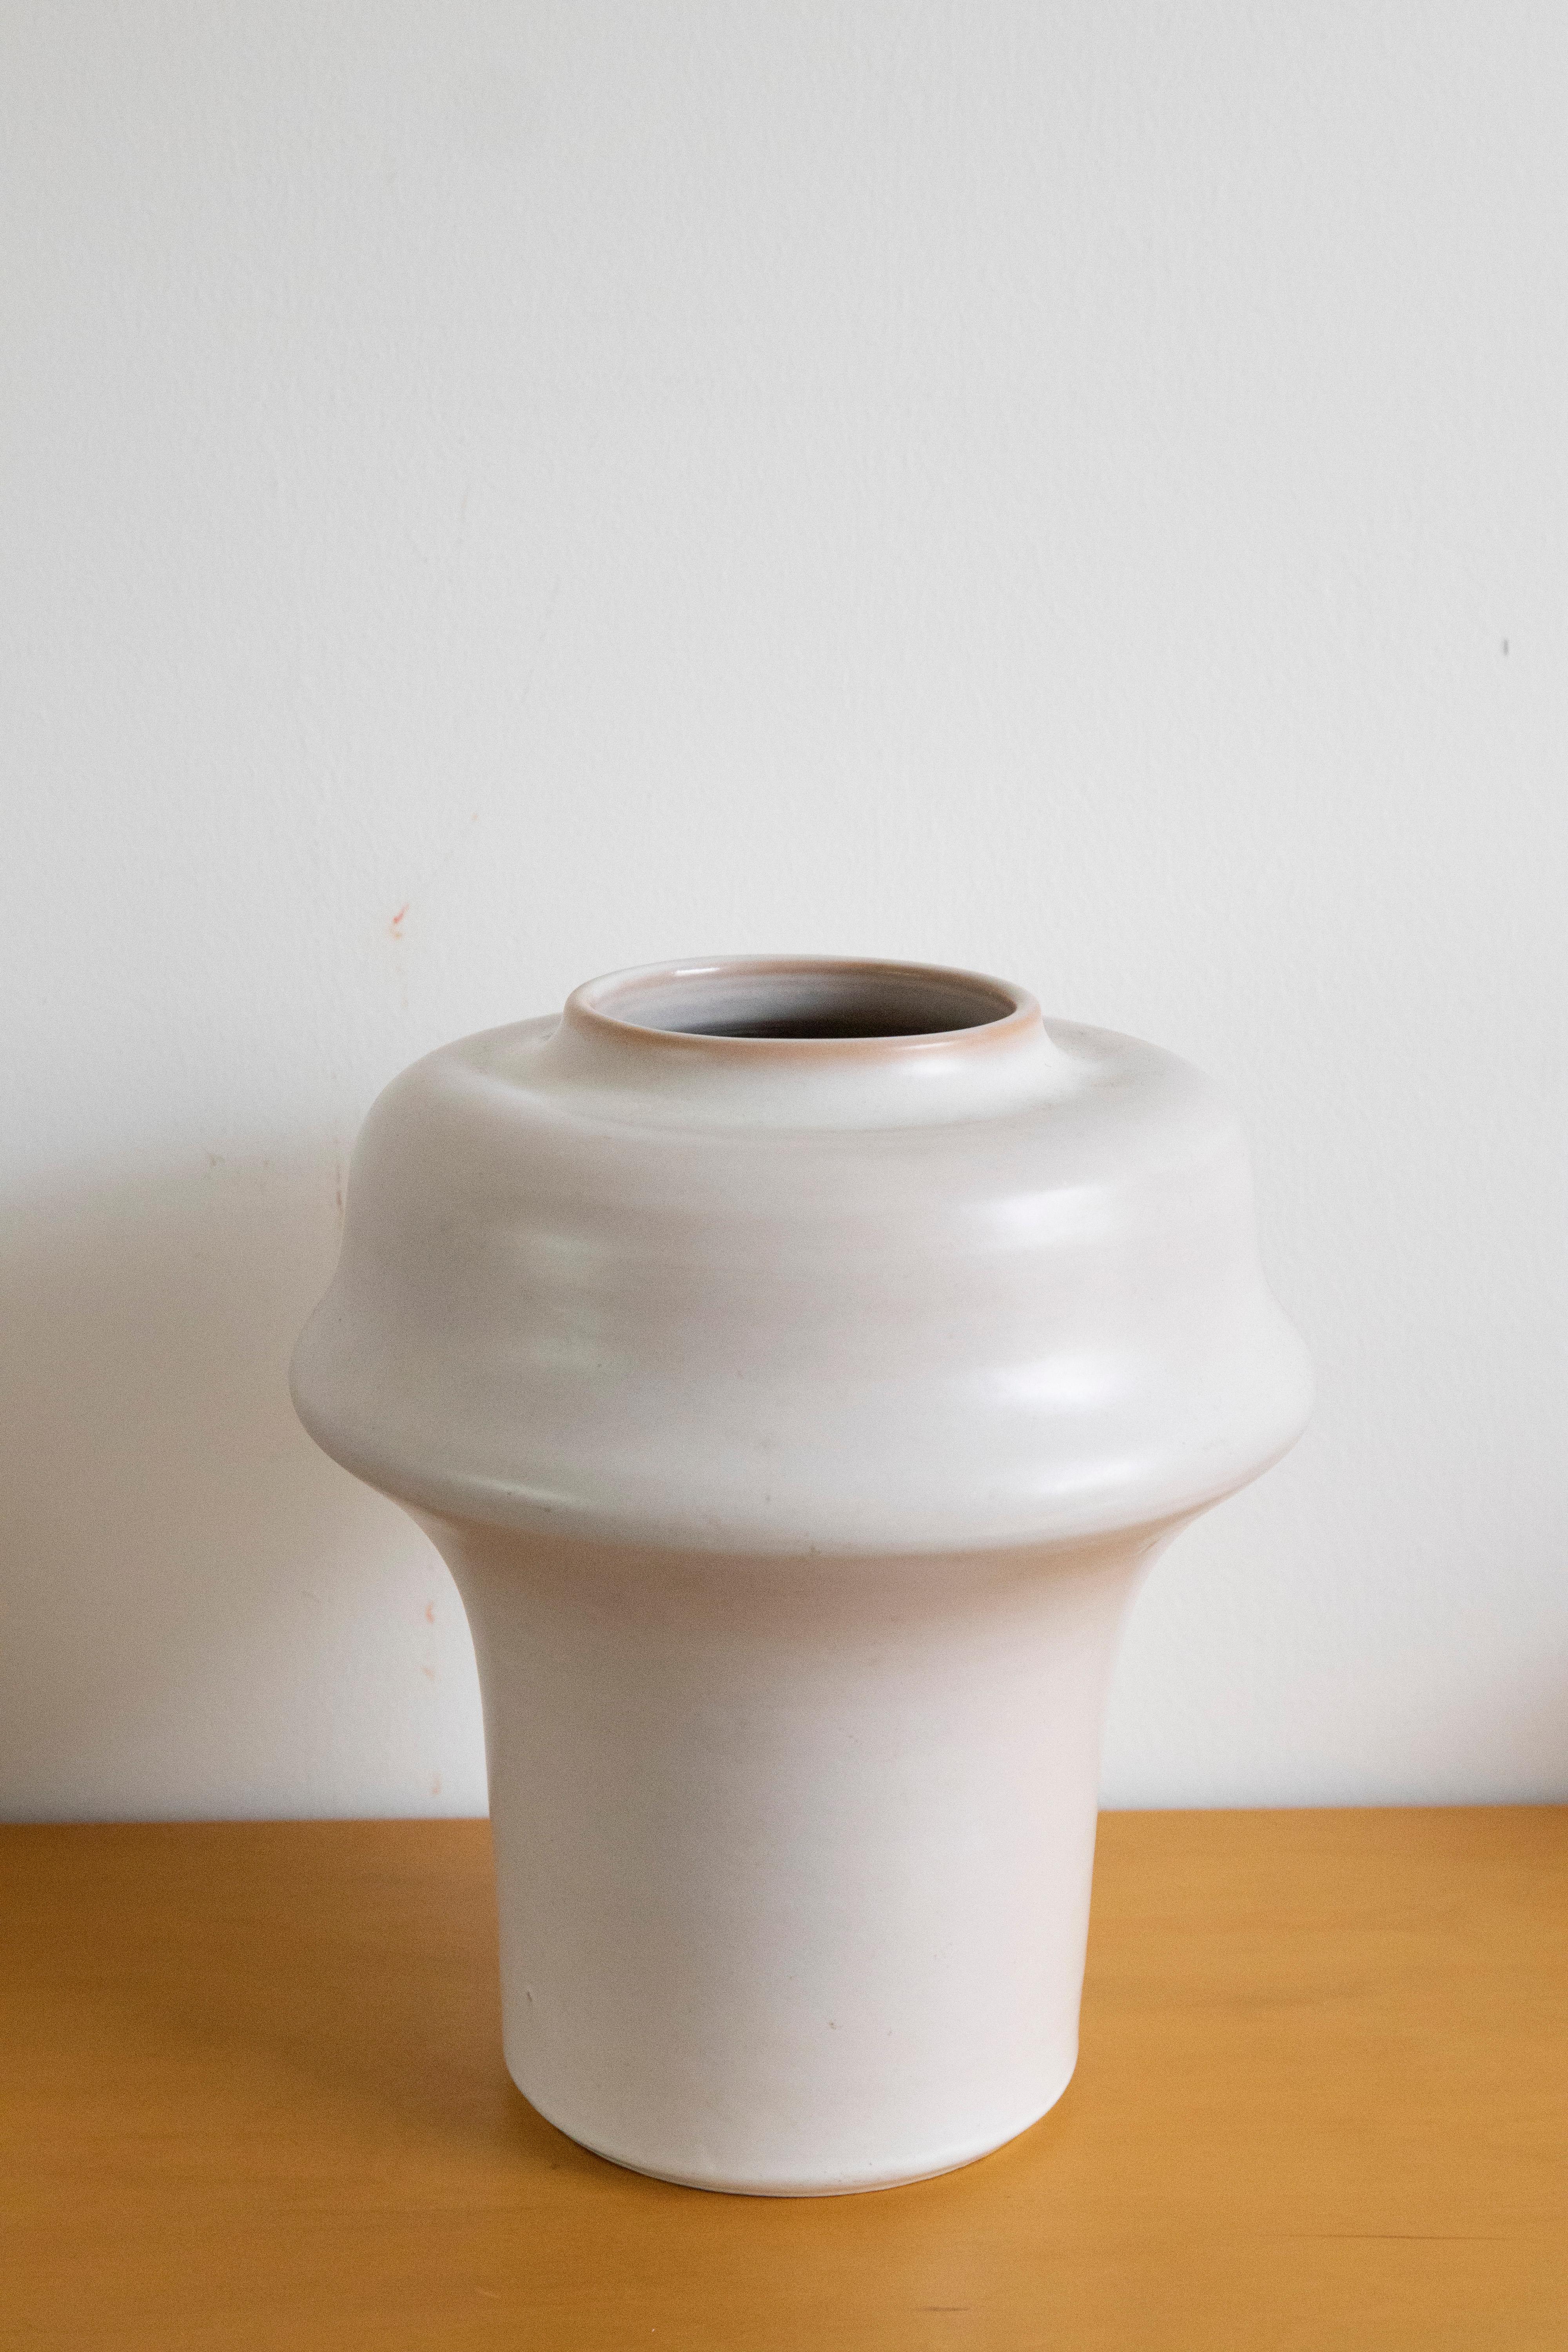 Aldo Londi, vaso serie Etrusco per Bitossi

Vaso creato da Aldo Londi per Bitossi, della serie Etrusco in smalto bianco opaco. 
Realizzato negli anni 60.
